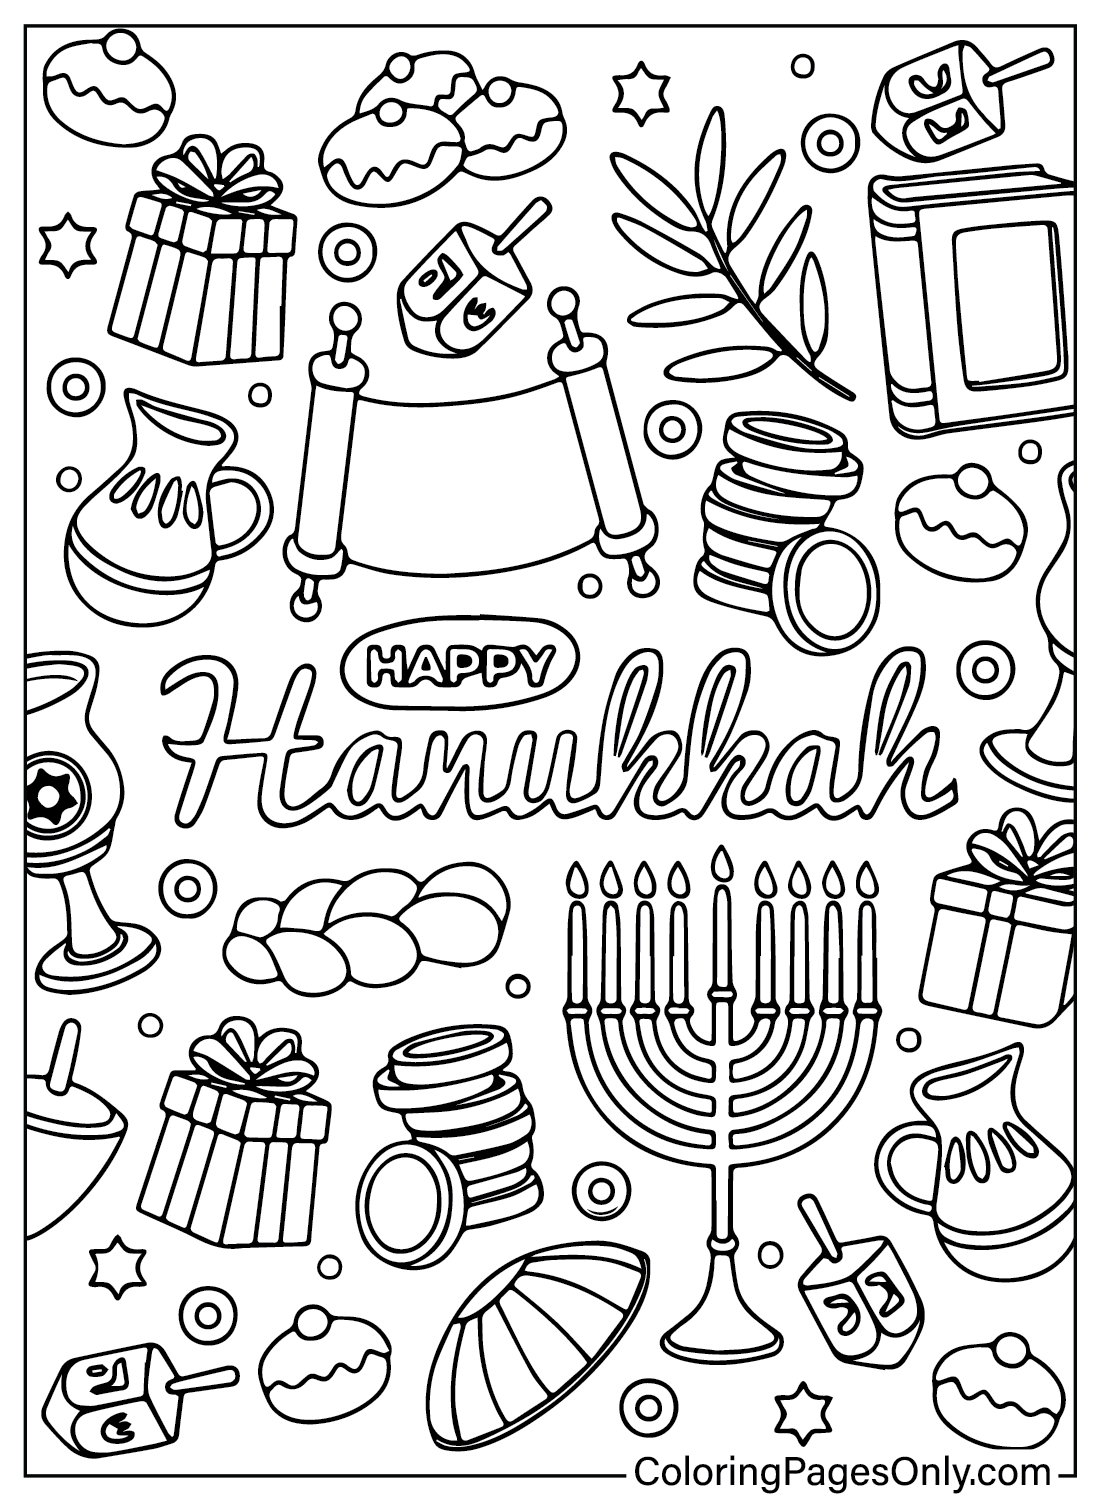 Páginas para colorear de Hanukkah para descargar de Hanukkah